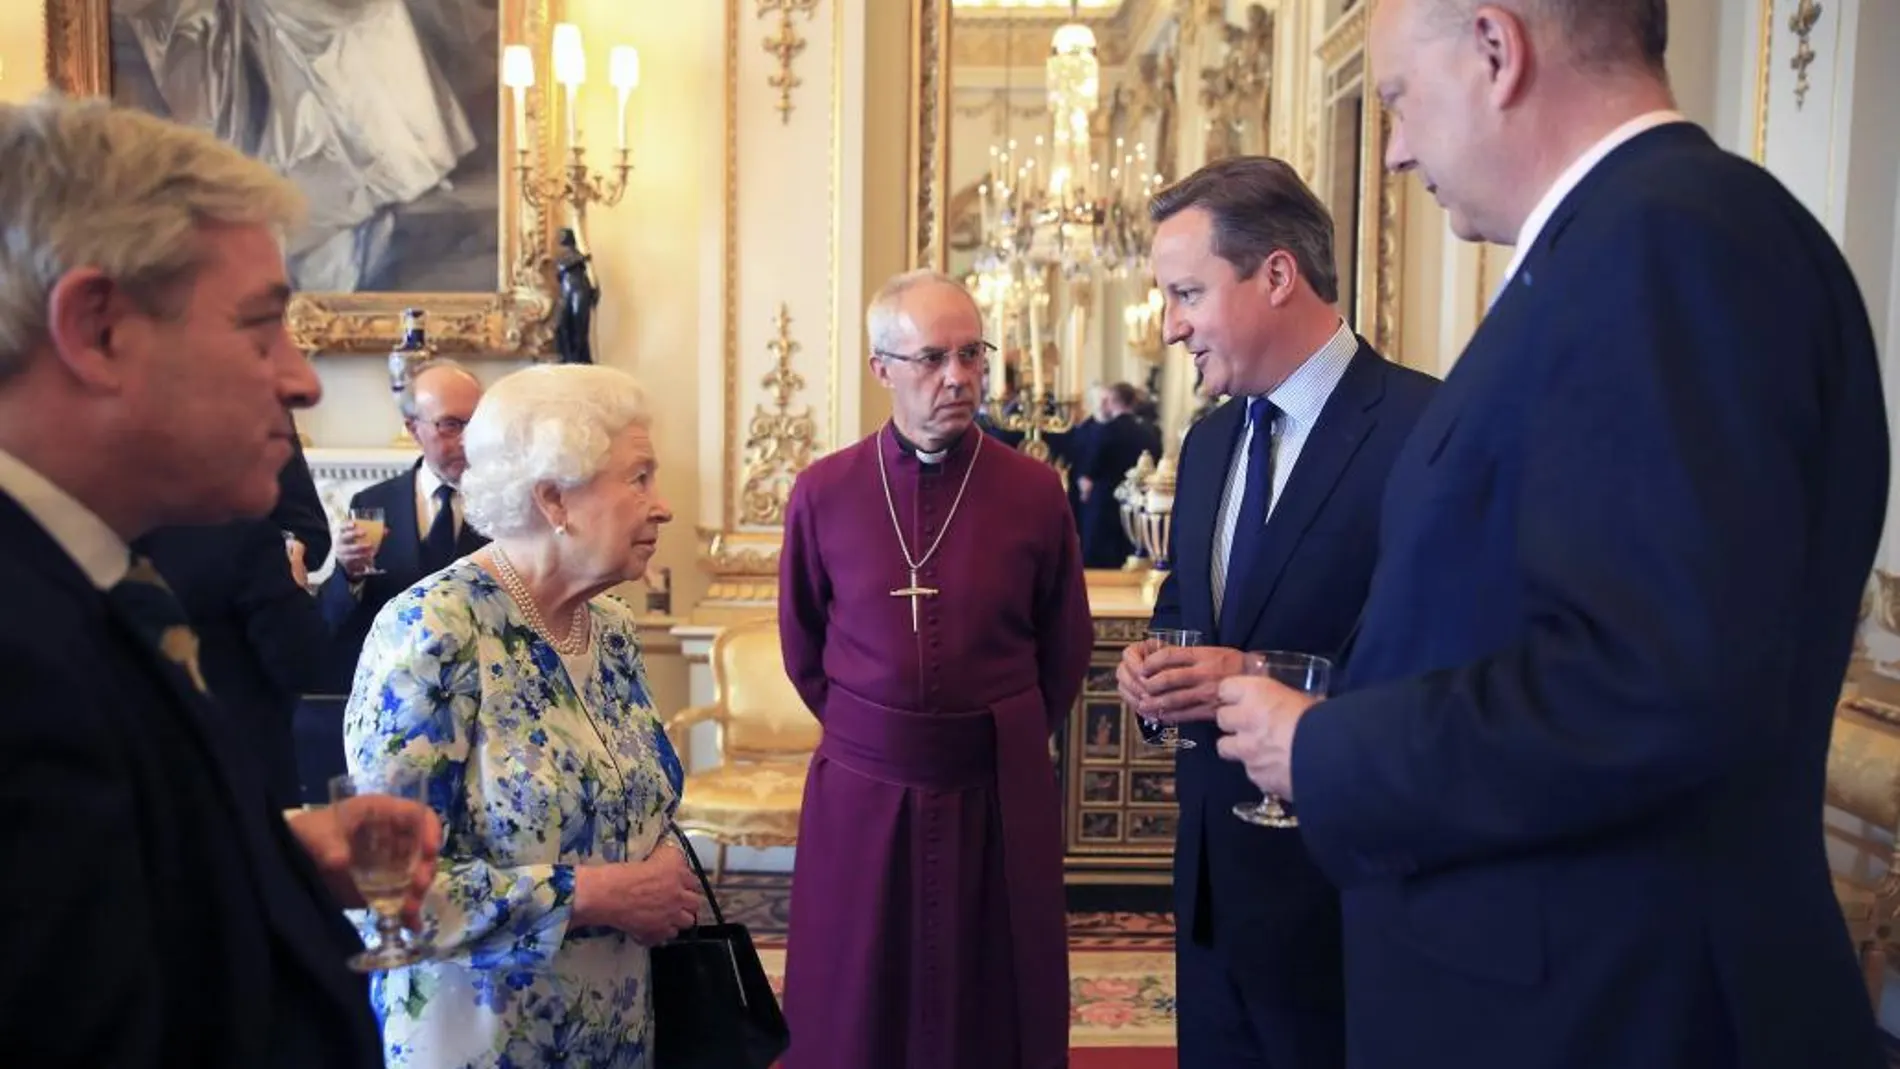 La reina Isabel II junto a David Cameron Grayling y el arzobispo de Canterbury, Justin Welby